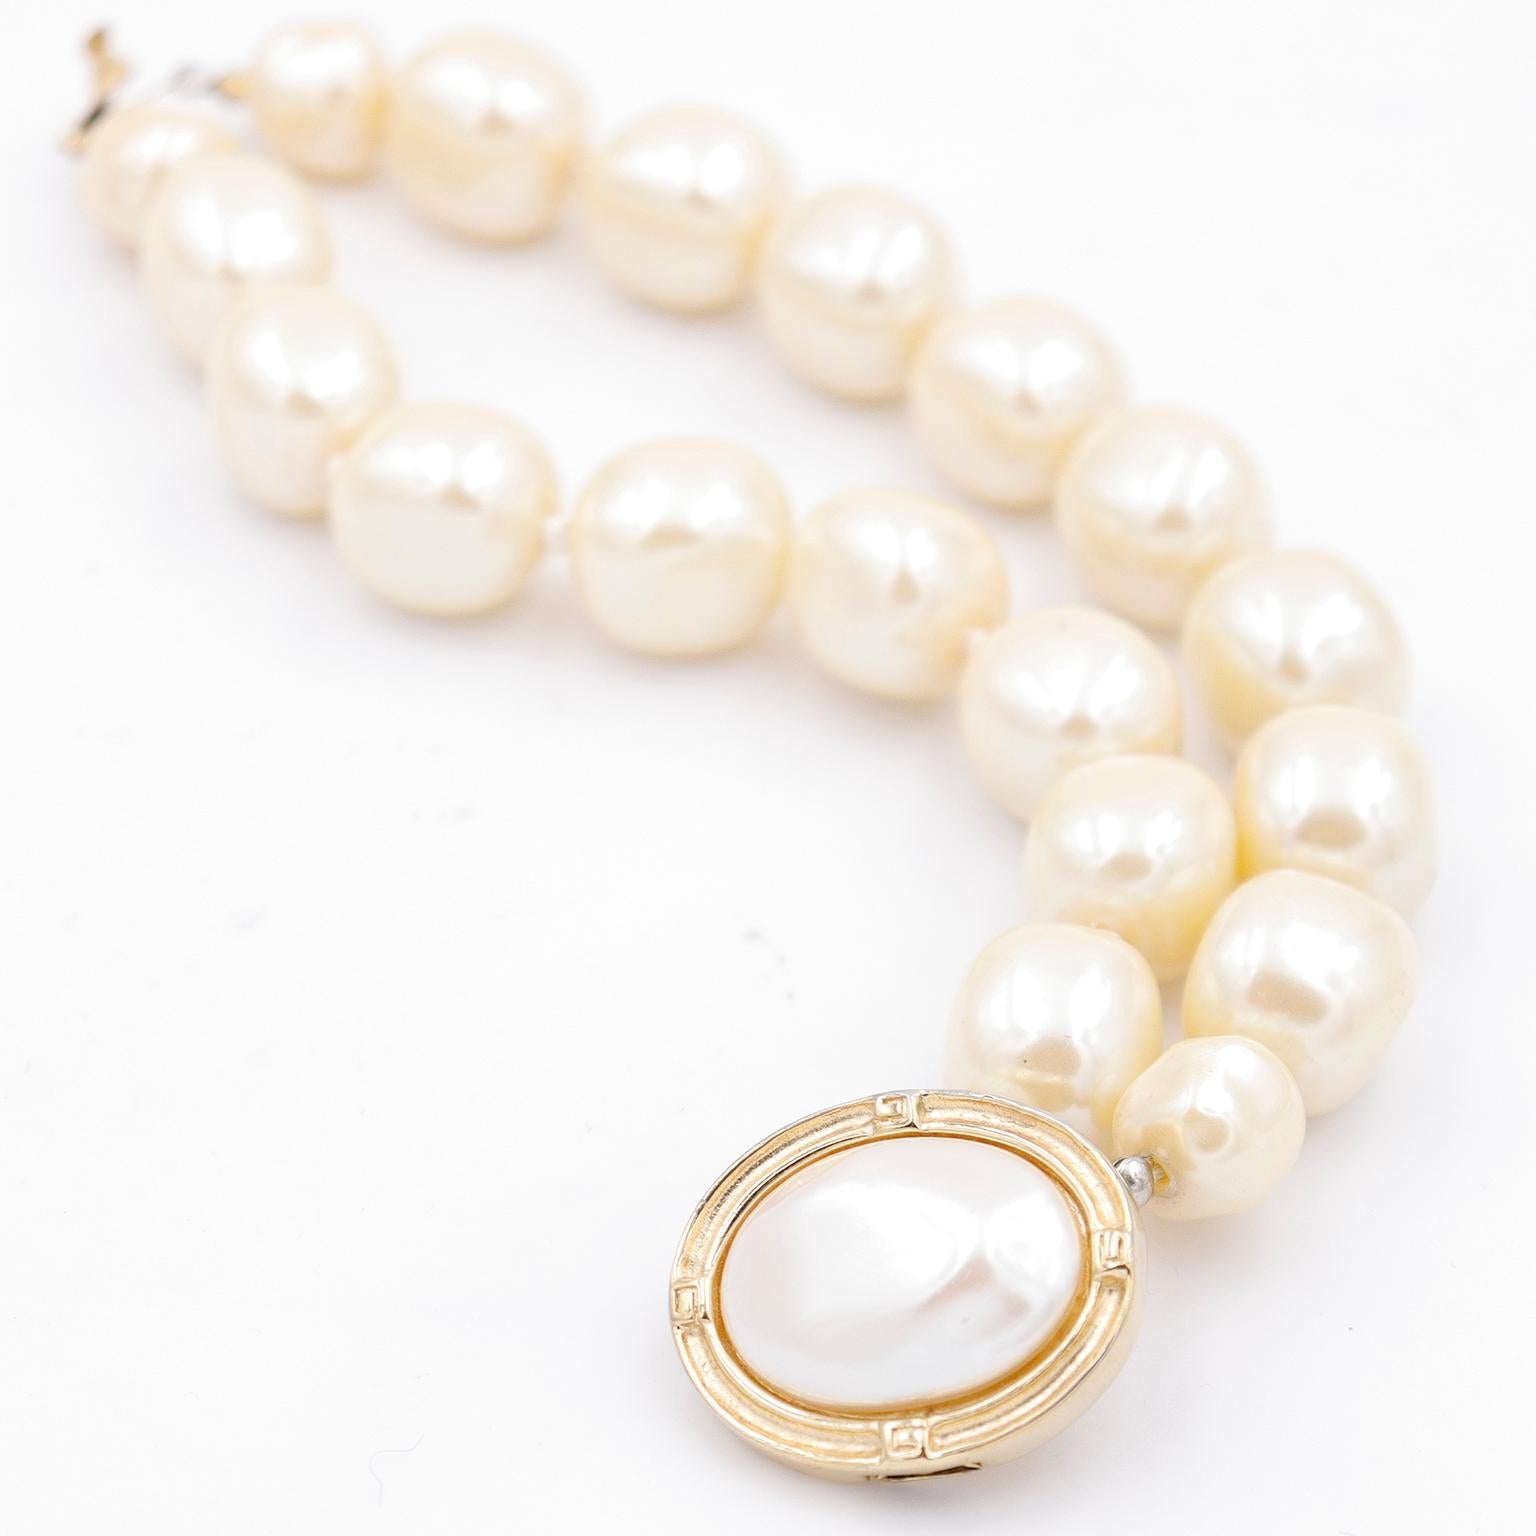 Dieses Armband aus Kunstperlen im Barockstil von Givenchy ist ein tolles Statement! Dieses wunderschöne Armband besteht aus großen, unregelmäßig geformten Kunstperlen und einem vergoldeten Verschluss mit einer großen, ovalen Perle in der Mitte. Das